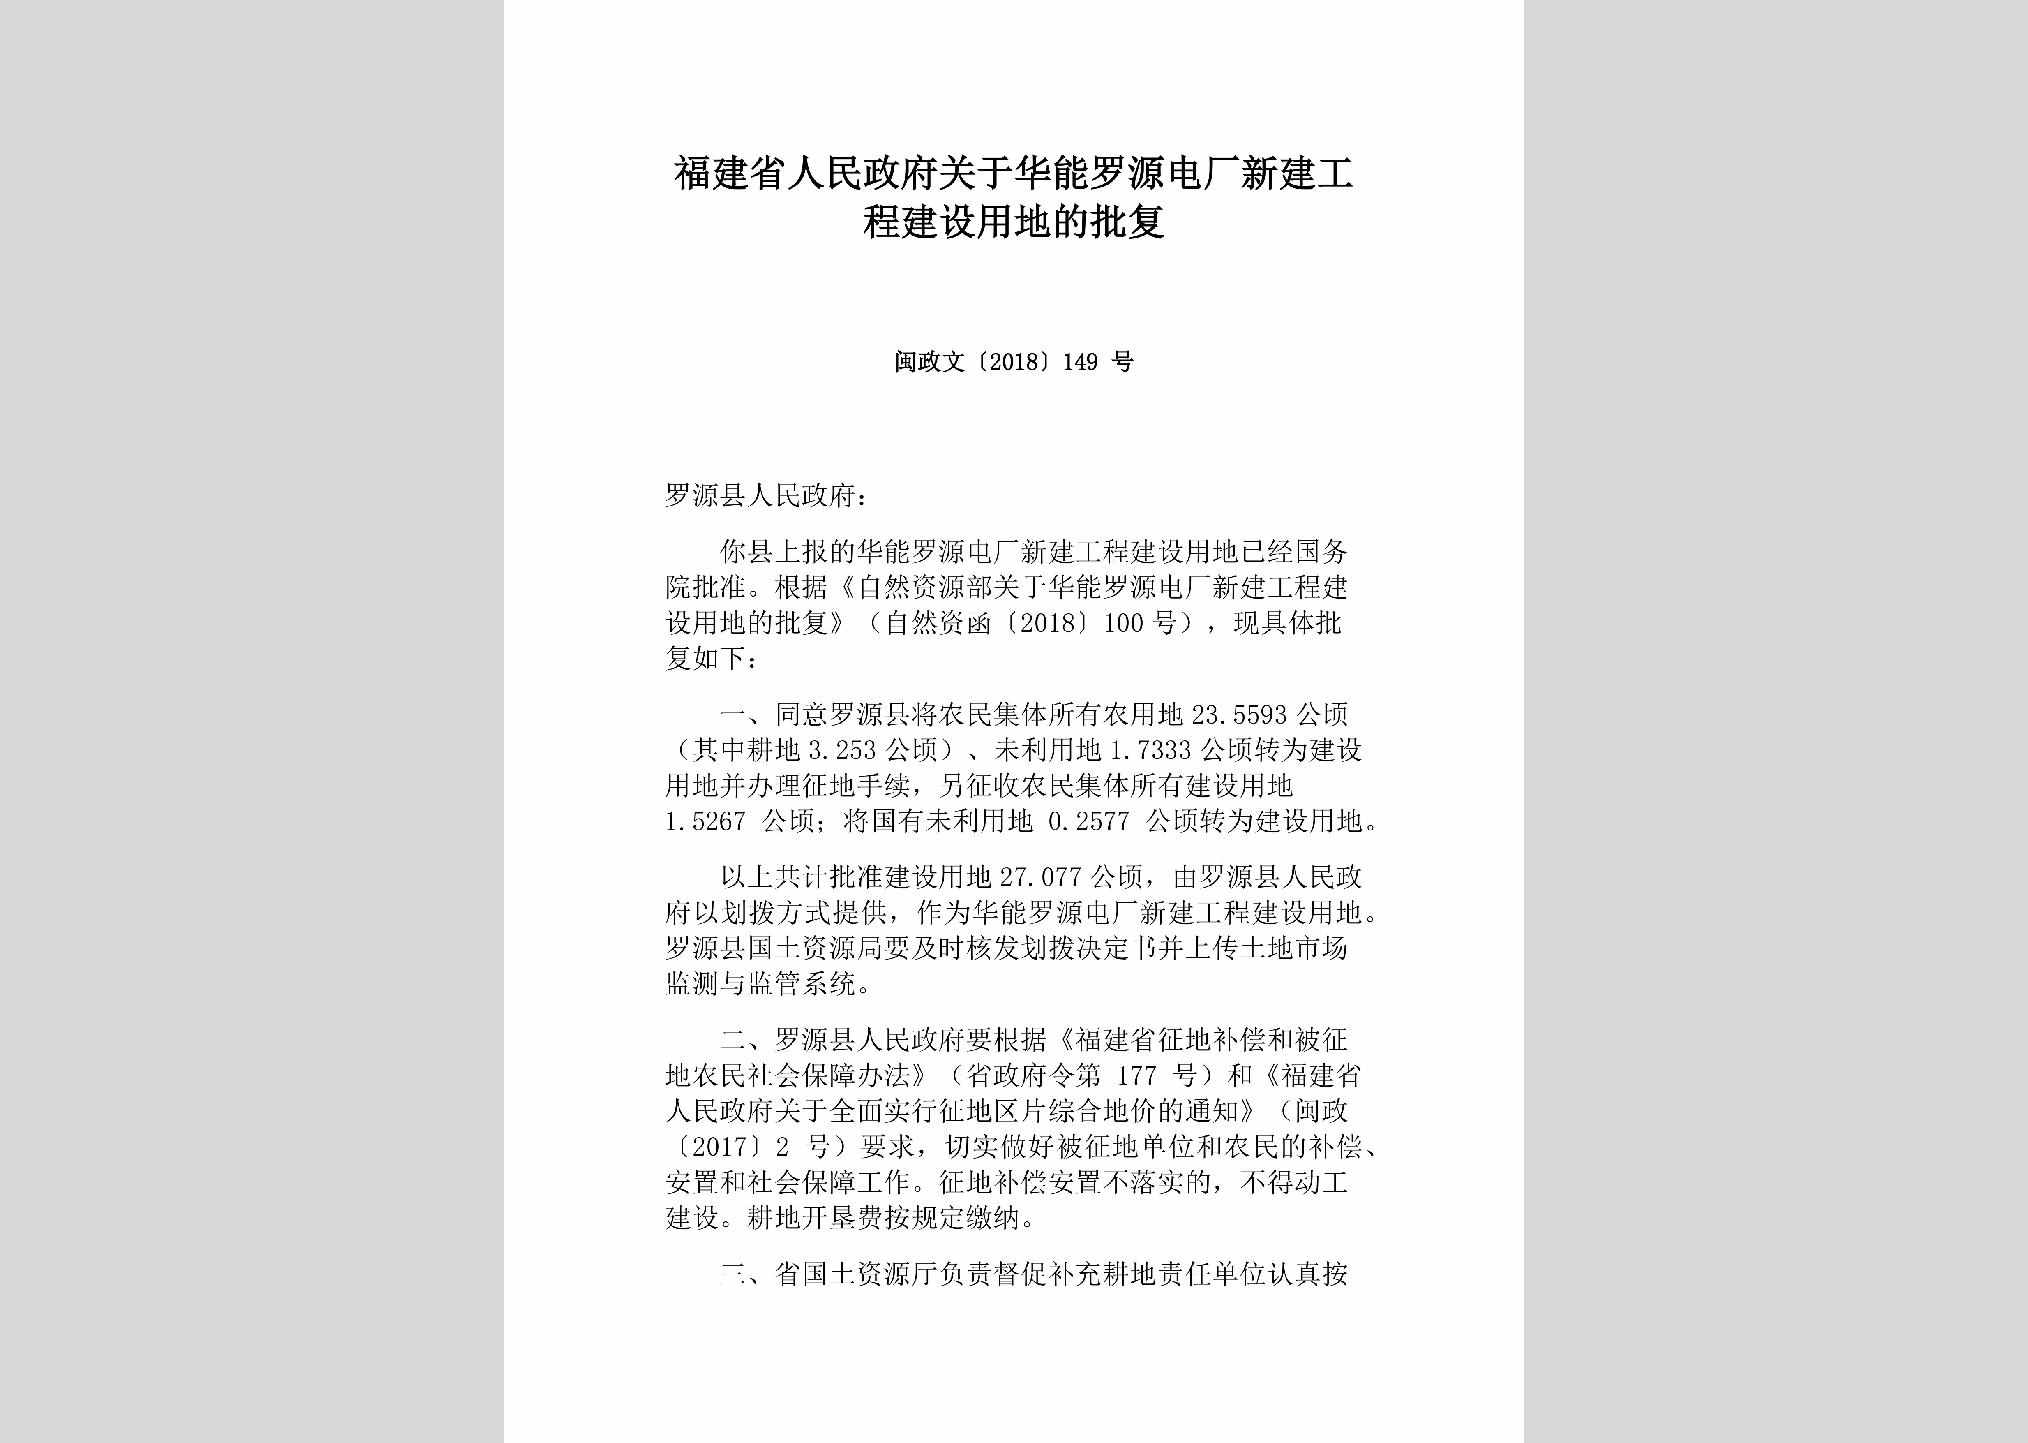 闽政文[2018]149号：福建省人民政府关于华能罗源电厂新建工程建设用地的批复